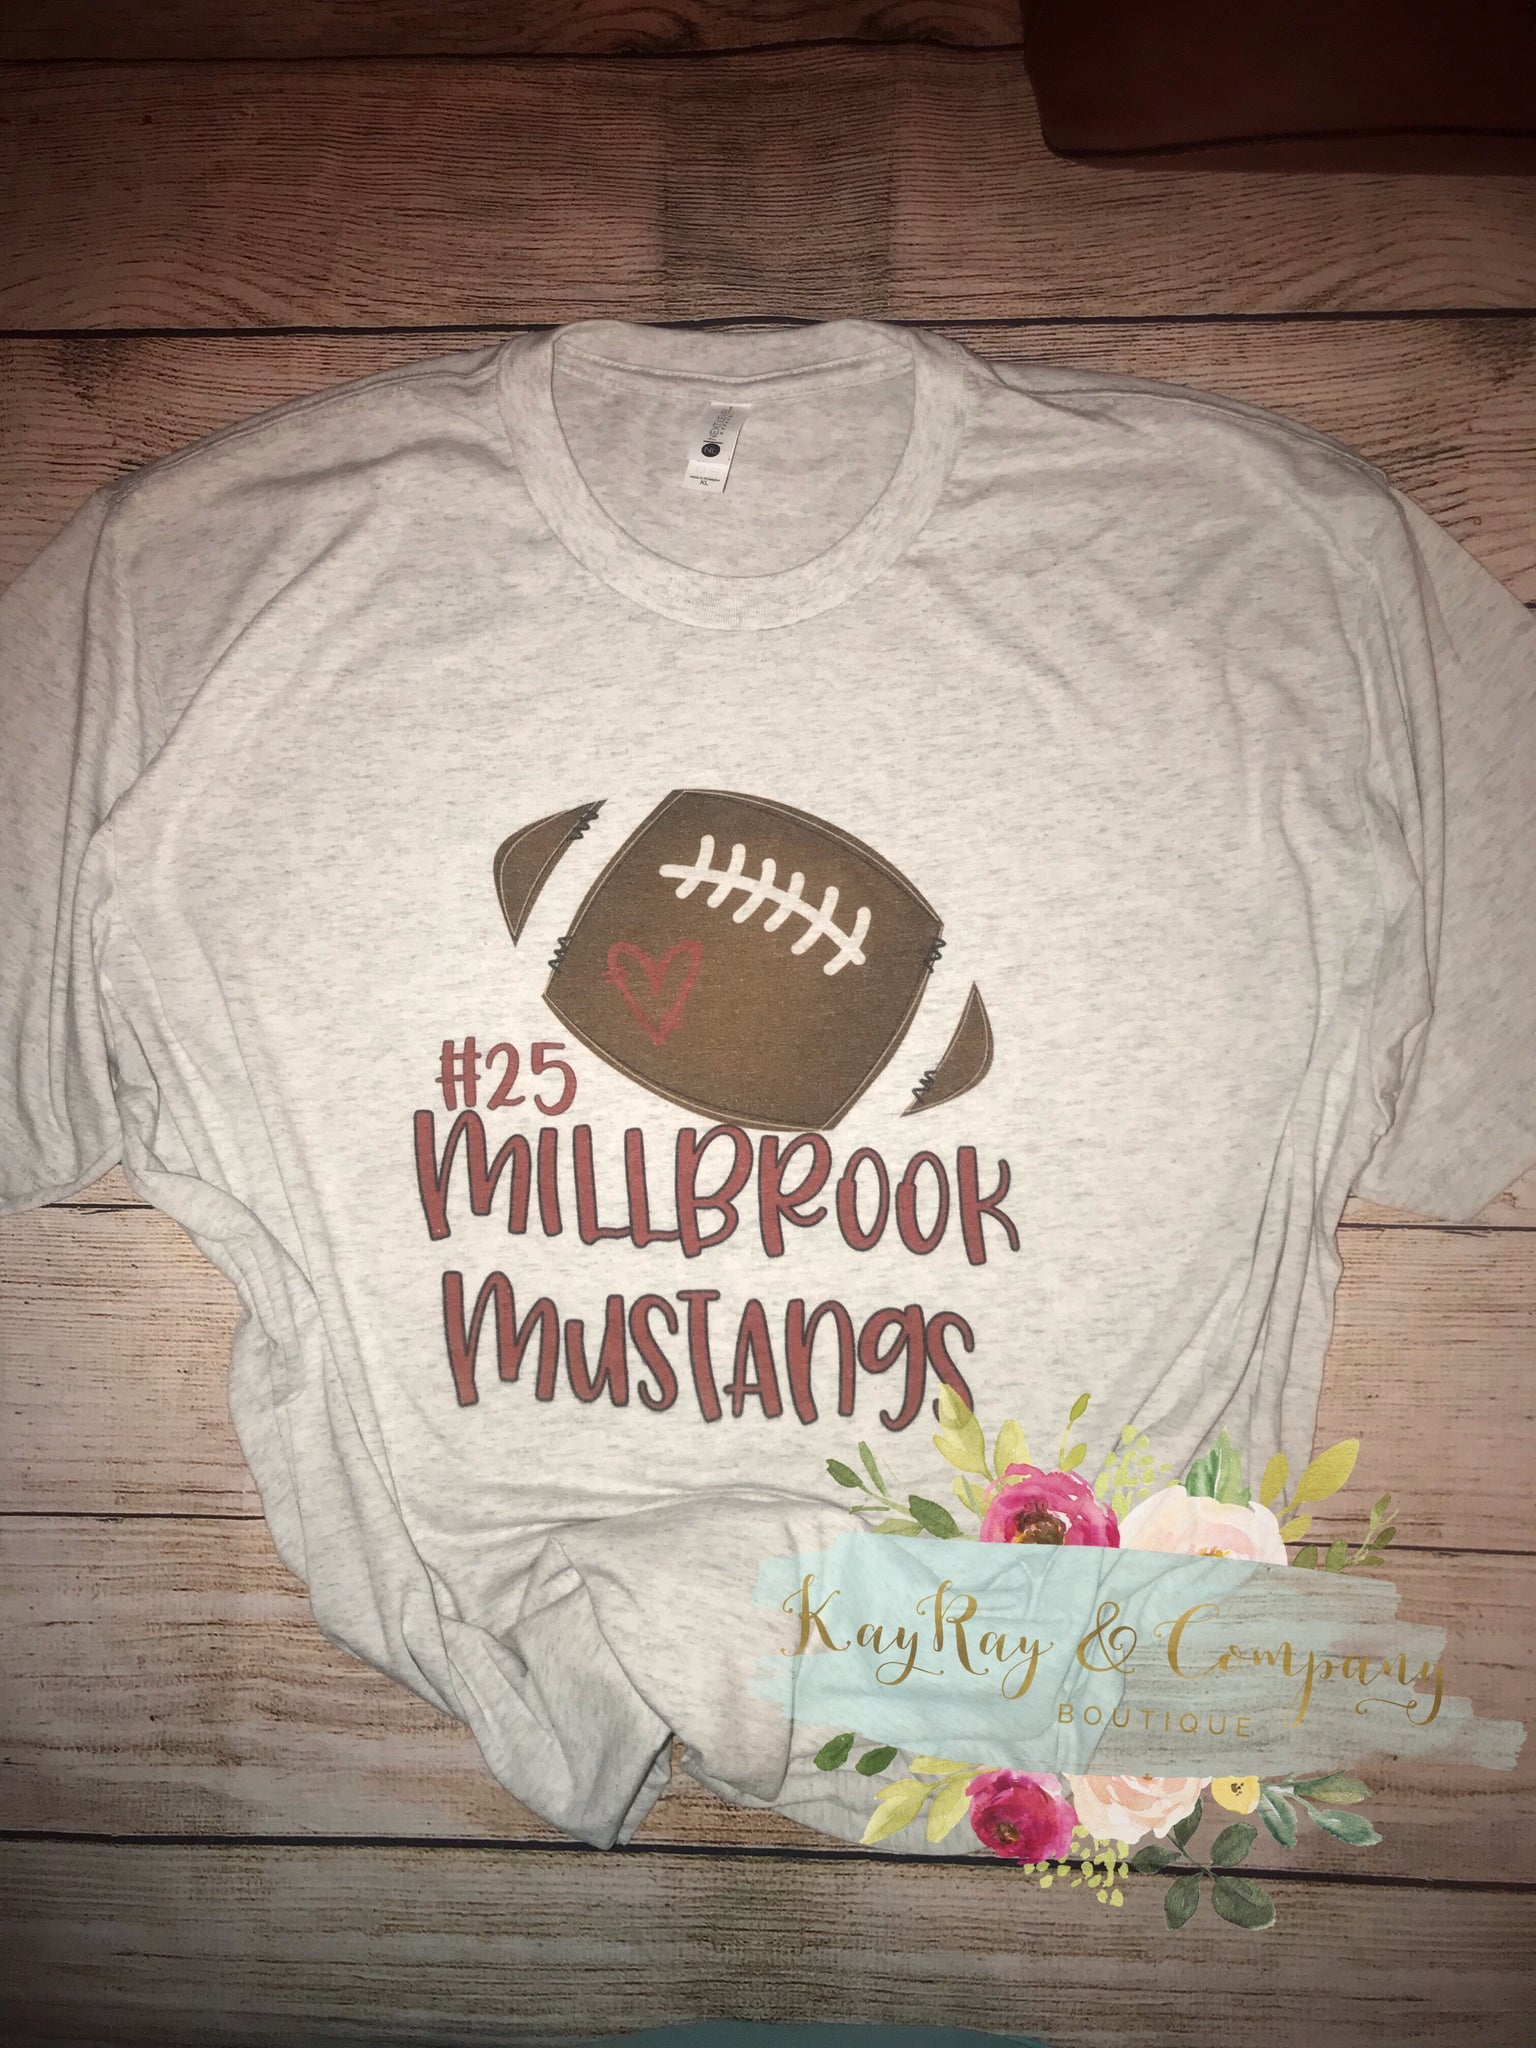 Millbrook Mustangs T-shirt